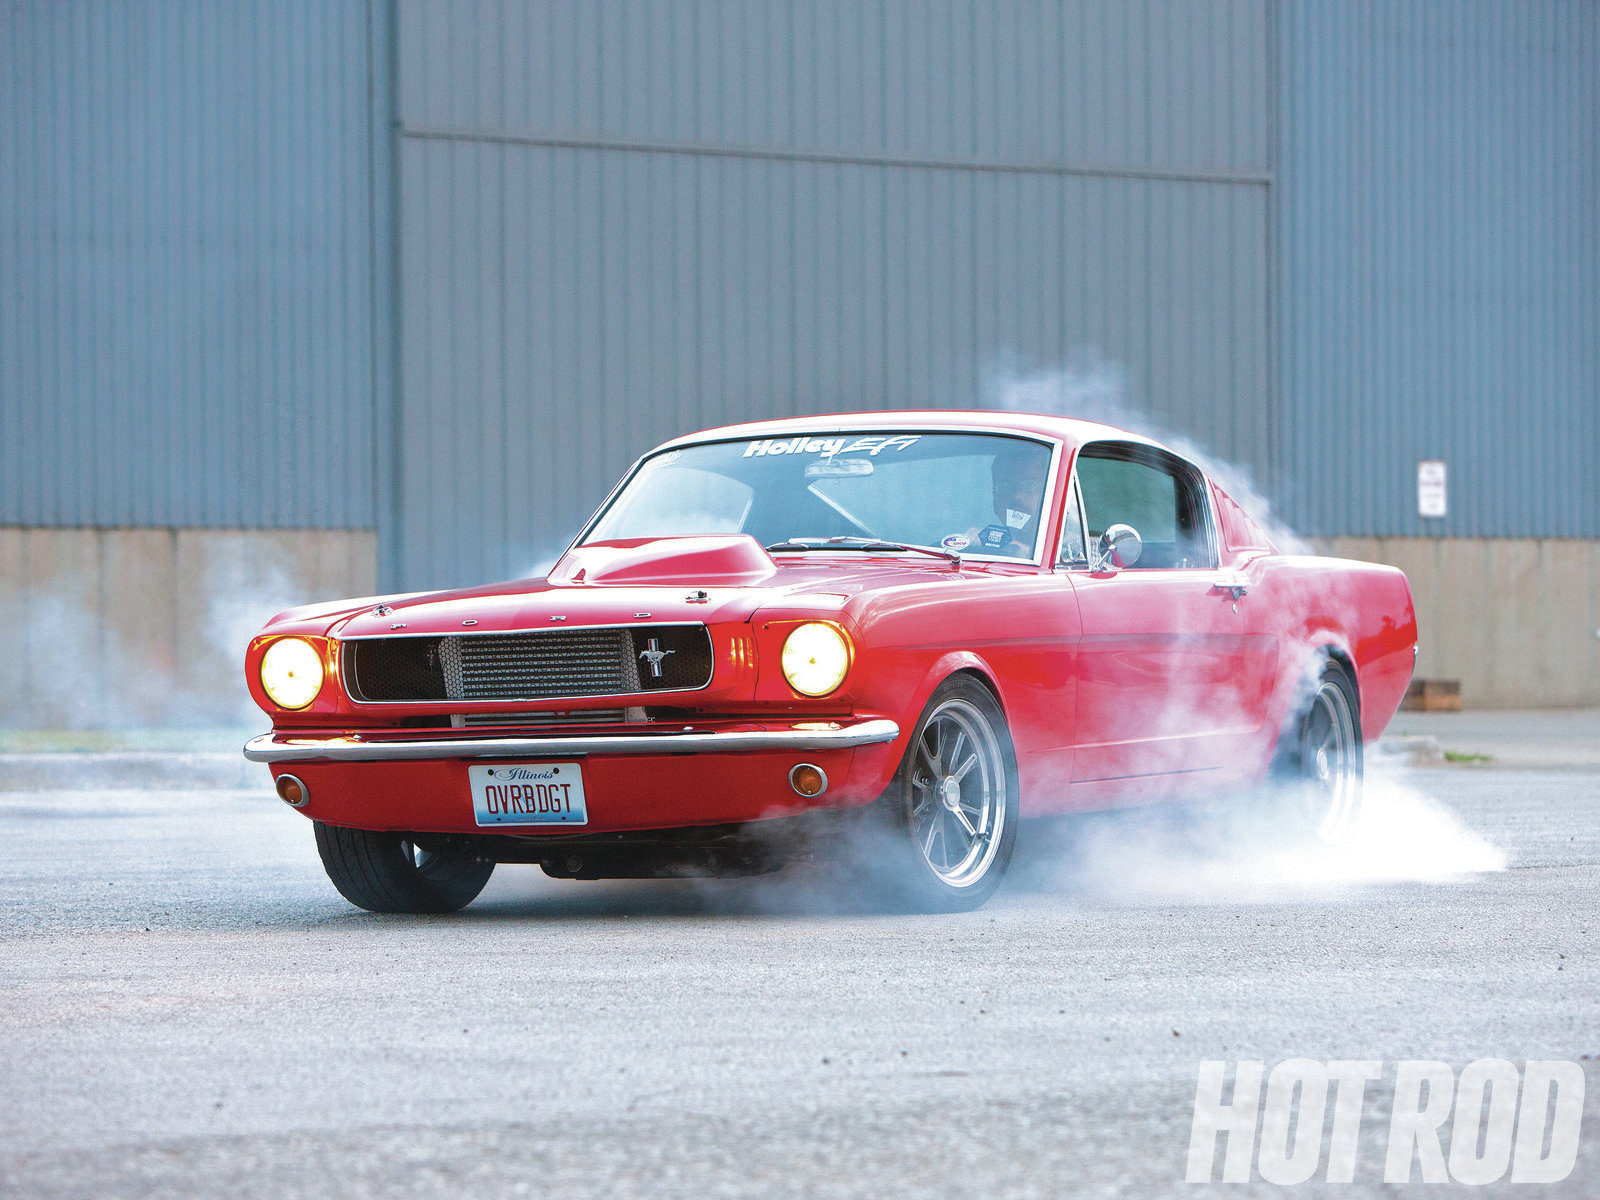 Mustang Burnout Automobiles Drag Racing Cars Race Car